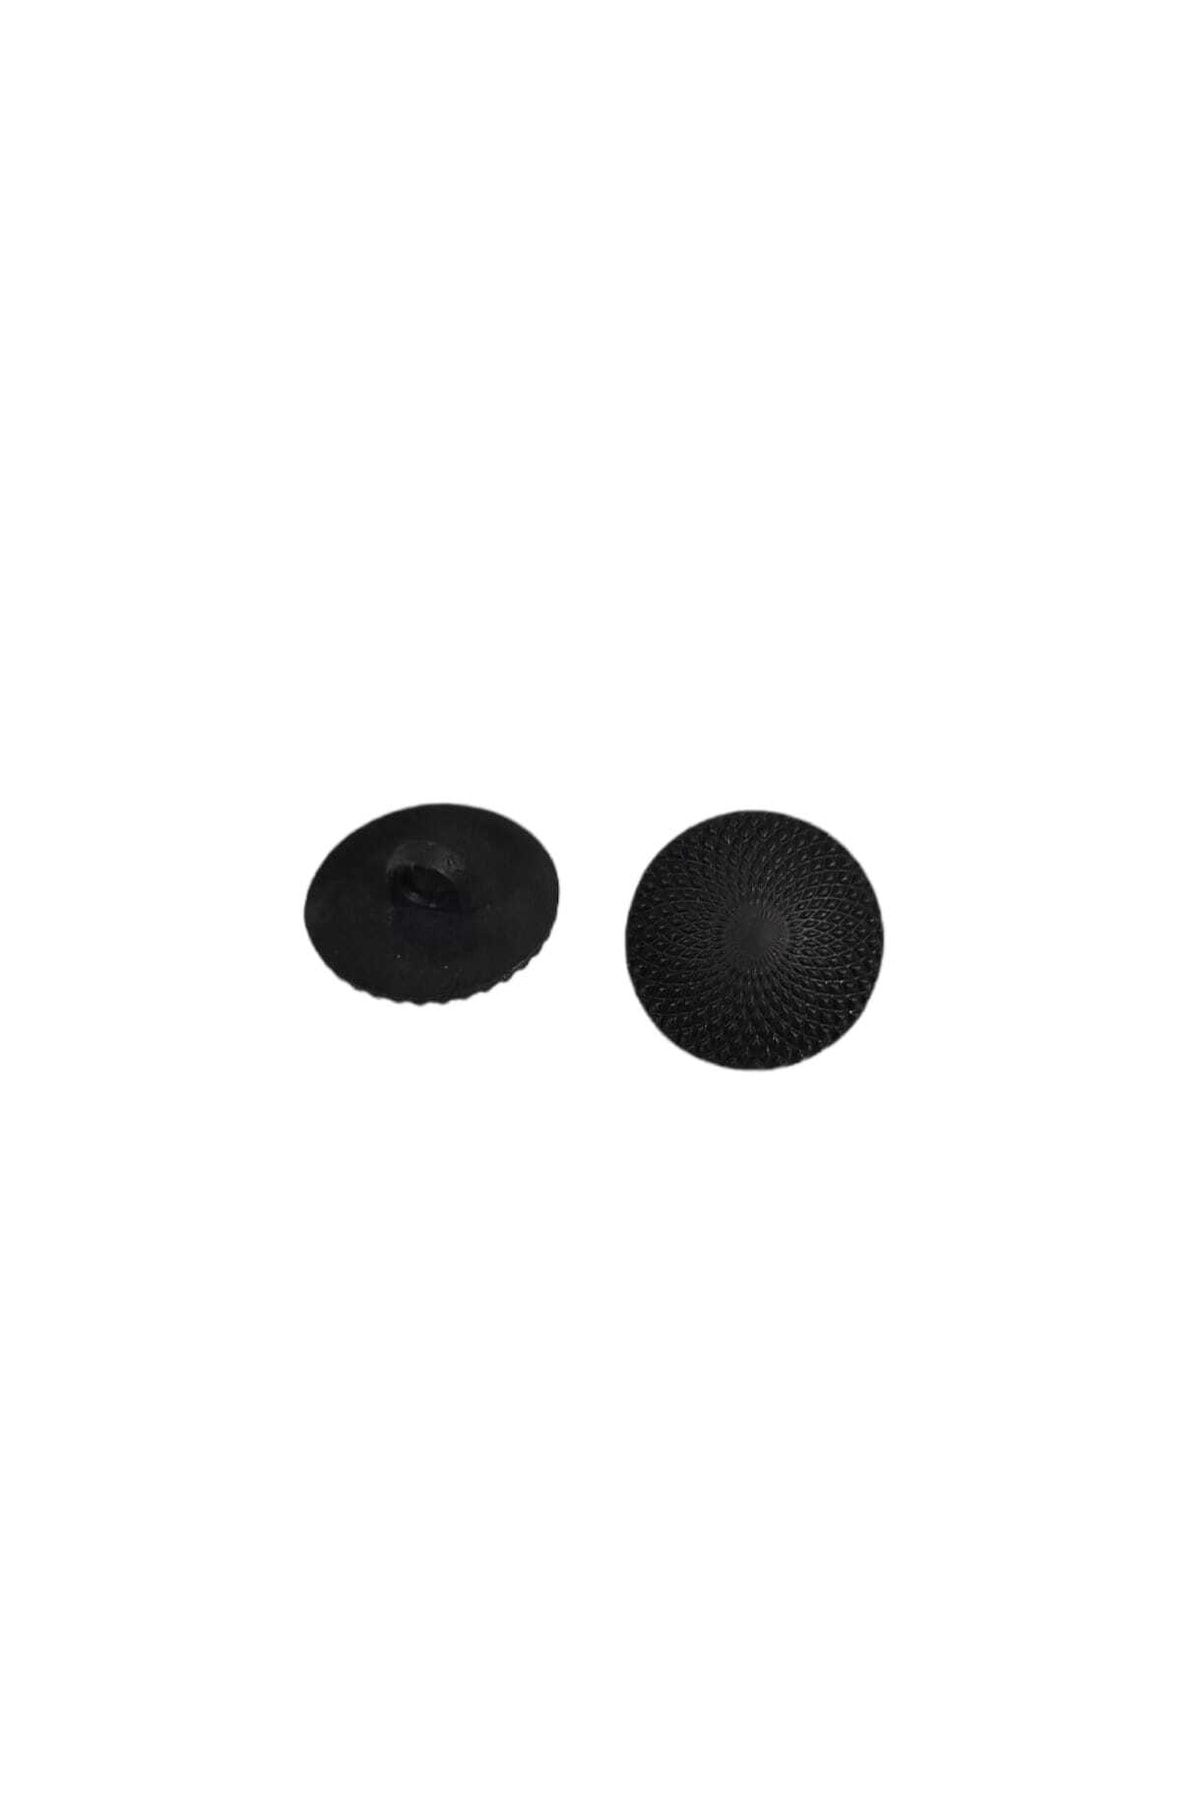 NTE Yastık - Kırlent - Koltuk - Aksesuar Desenli Plastik Siyah Düğme 21mm 30 Adet